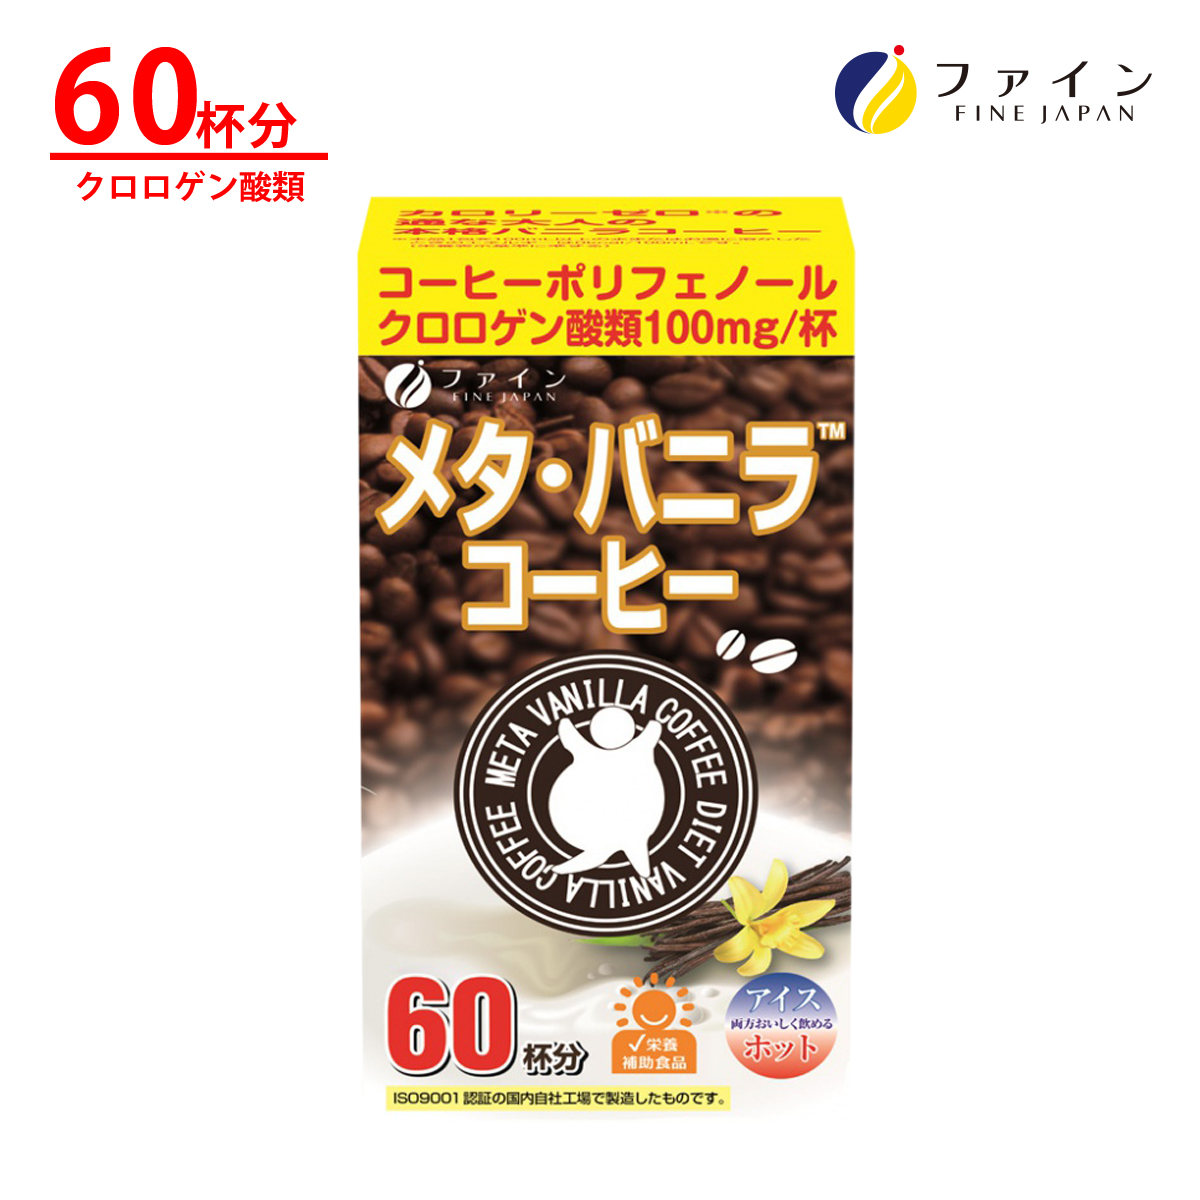 メタ ・ バニラ コーヒー クロロゲン 酸 類100mg オリゴ糖 45mg カテキン 3mg配合 60杯分 燃焼 ダイエット サポート 満足感 ファイン